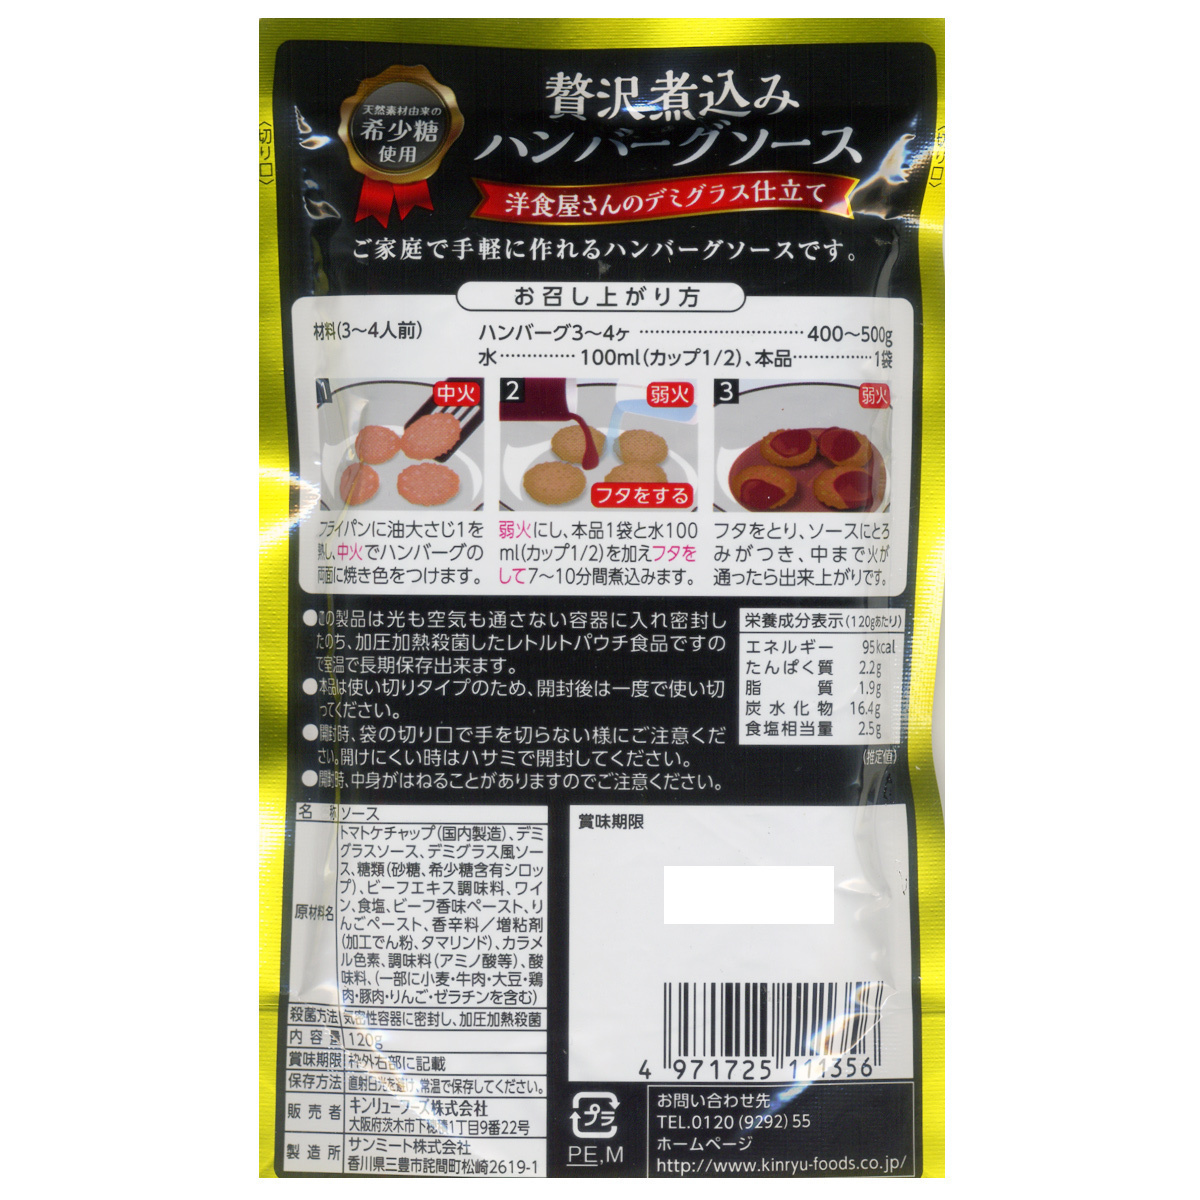  включение в покупку возможность роскошь nikomi гамбургер соус разбавление модель редкий сахар использование gold дракон f-z120gx3 пакет комплект /.